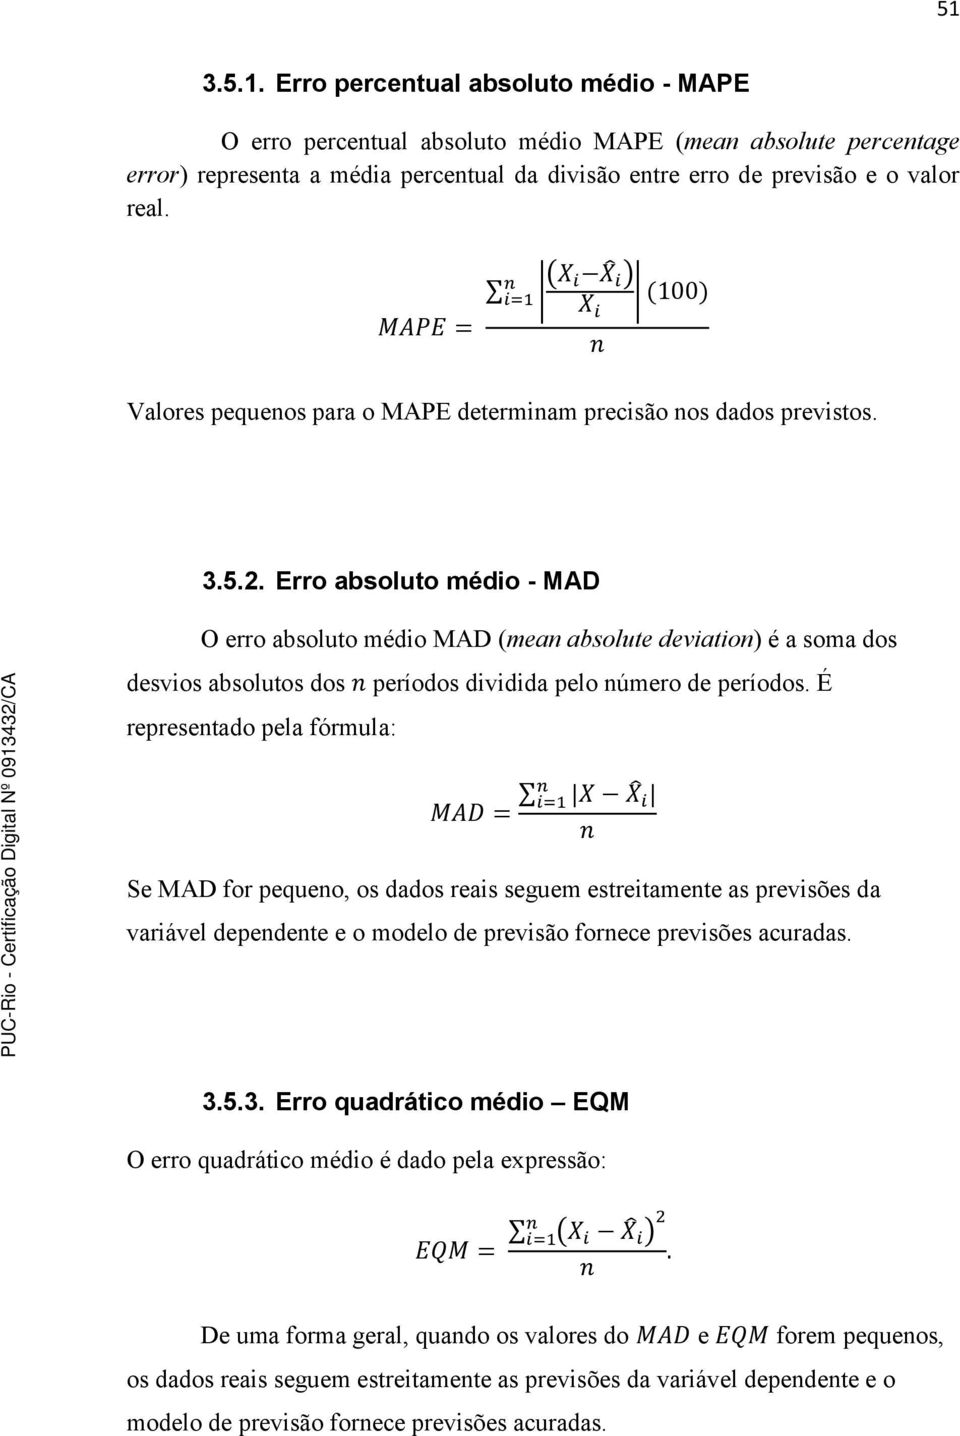 Erro absoluto médio - MAD O erro absoluto médio MAD (mean absolute deviation) é a soma dos desvios absolutos dos períodos dividida pelo número de períodos.